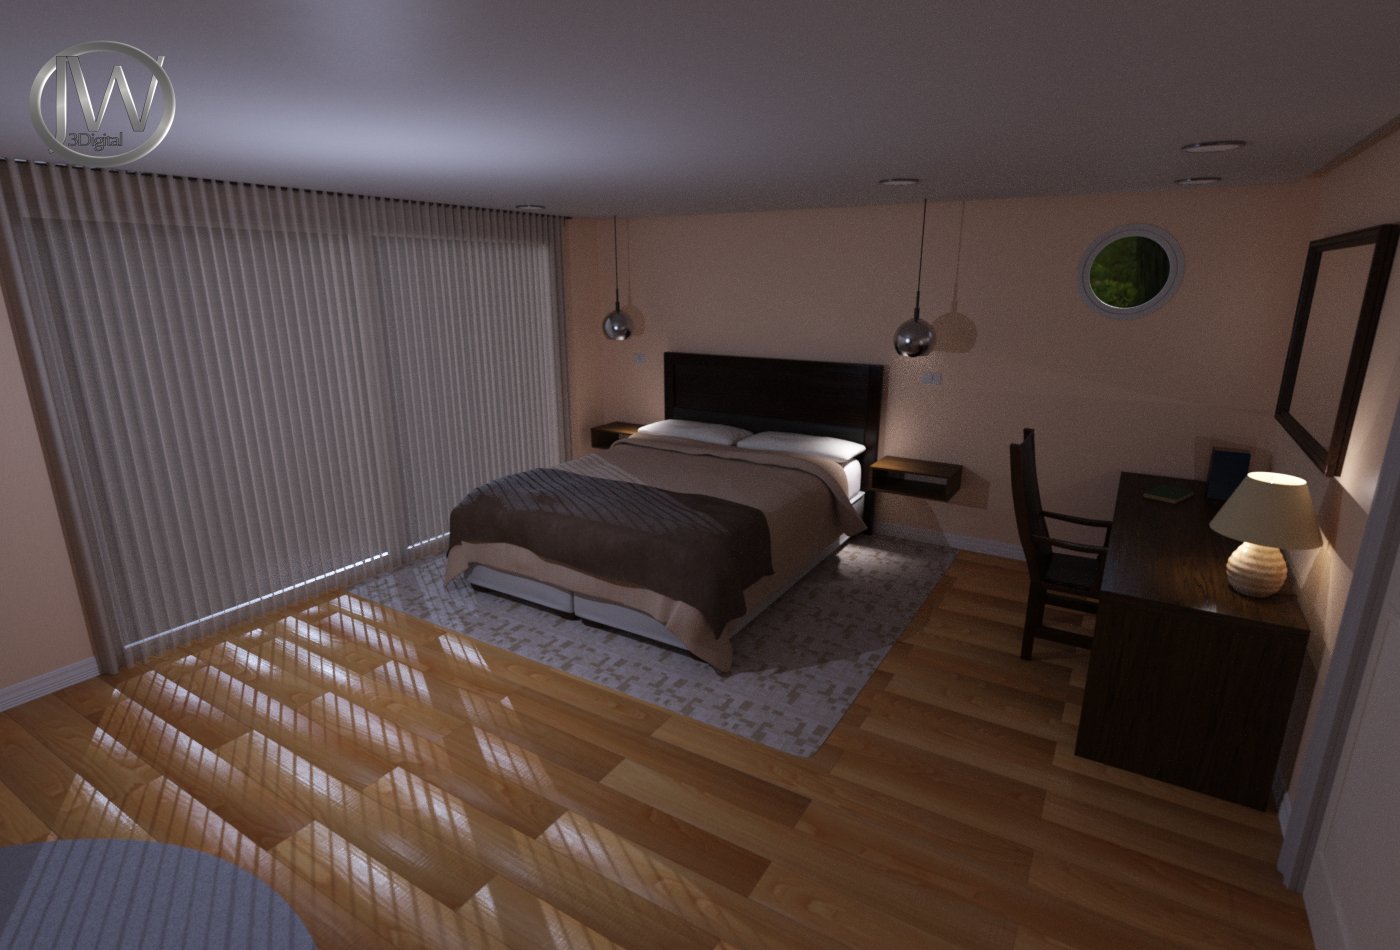 JW Hotel Room by: JWolf, 3D Models by Daz 3D